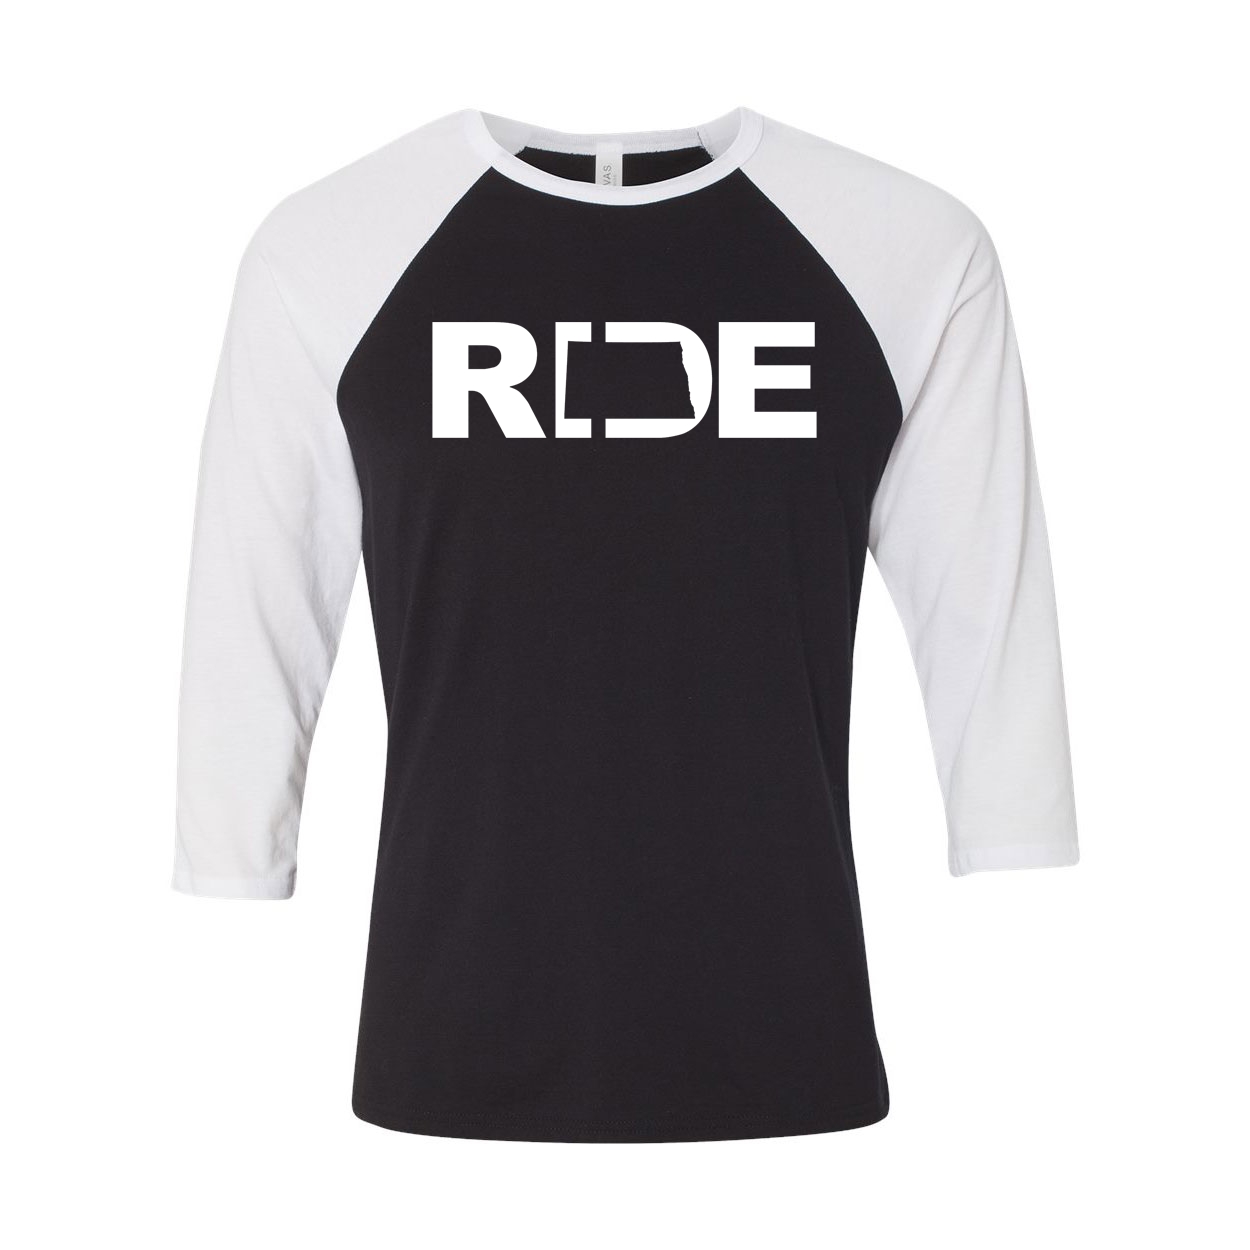 Ride North Dakota Classic Raglan Shirt Black/White (White Logo)